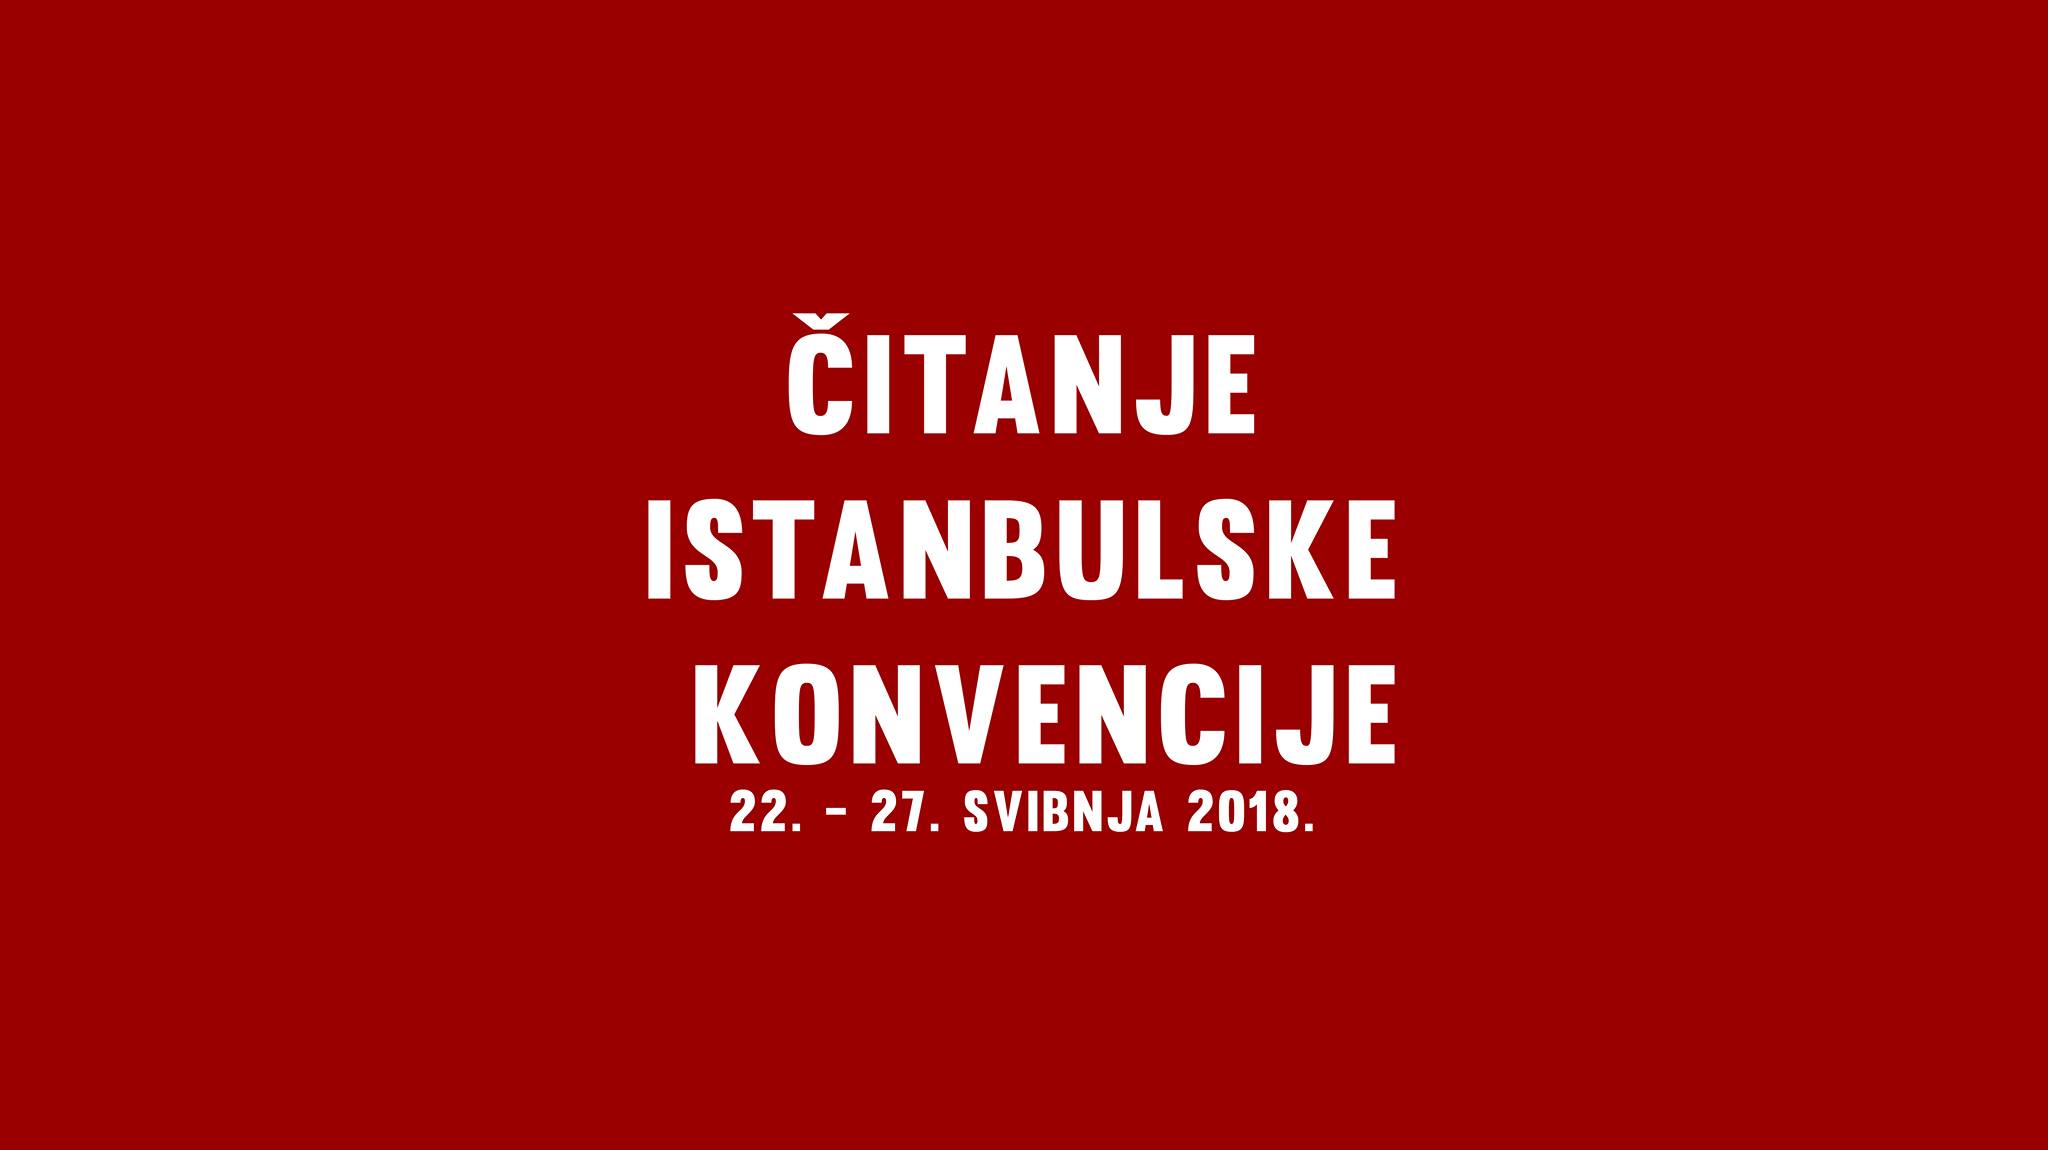 Čitanje istanbulske konvencije – znanje je moć